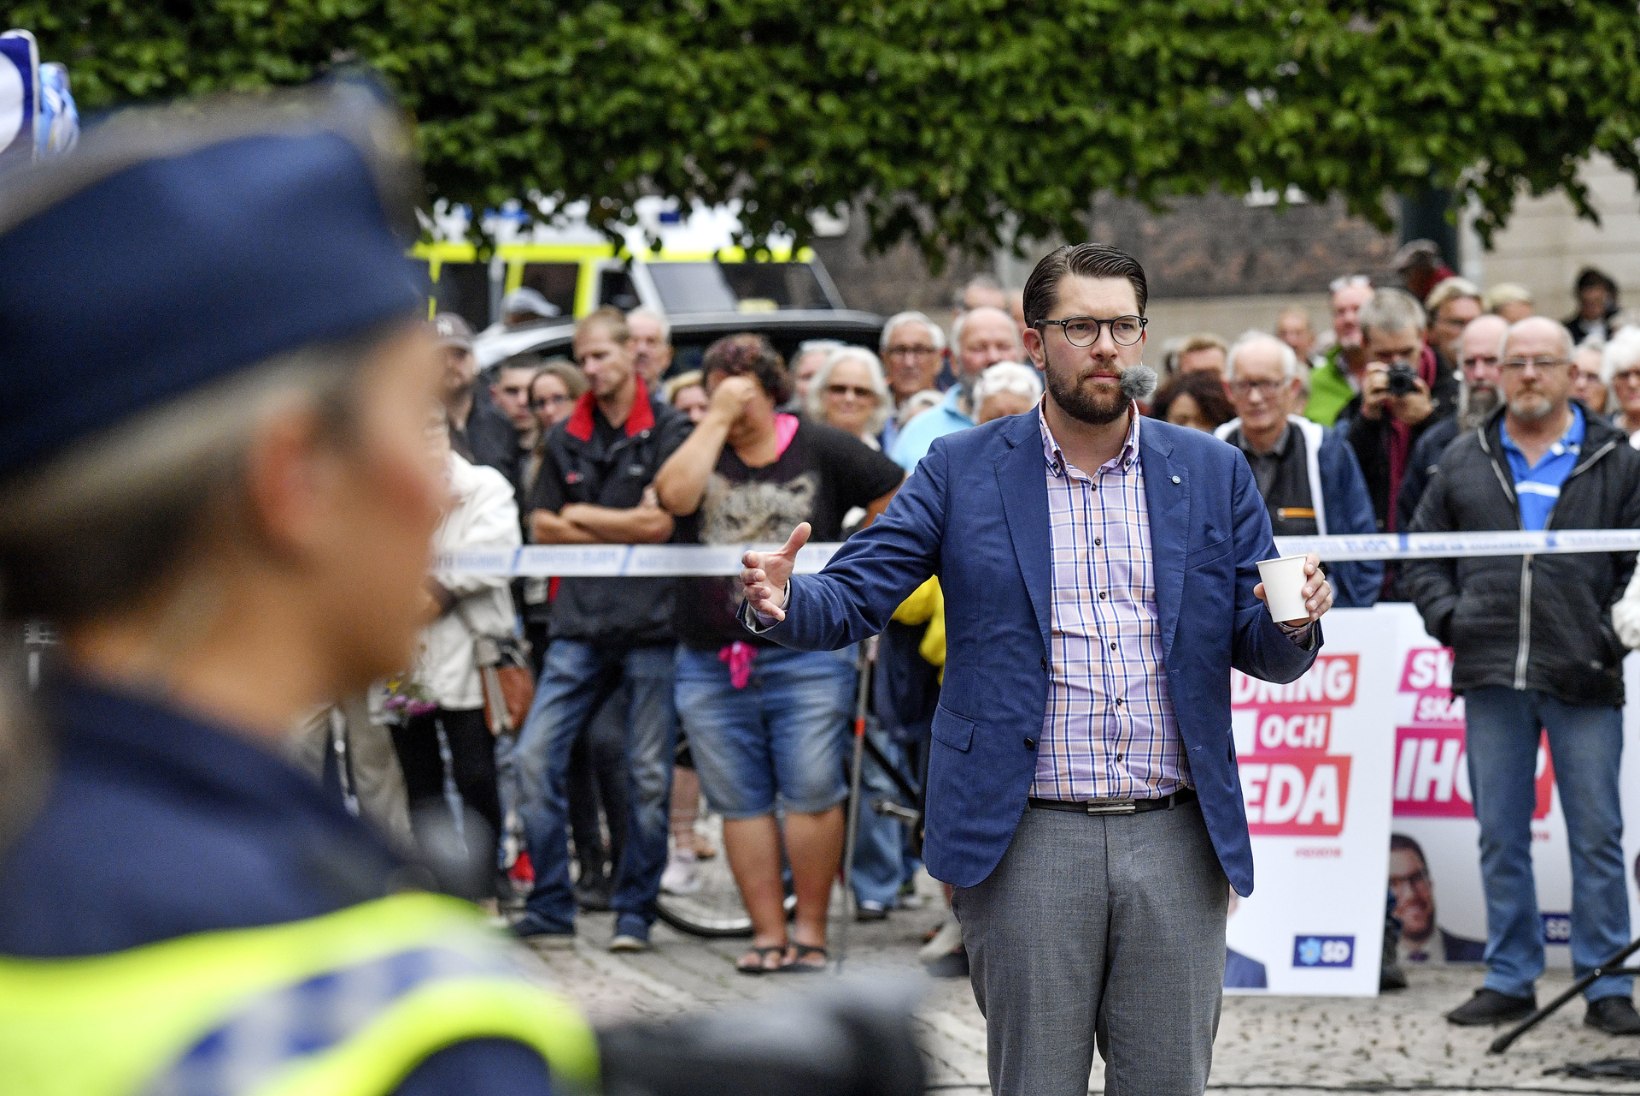 VAADE ROOTSI ELLU: Palme ja Lindh mõrvati, Rootsi poliitikute elu on ka praegu ohus